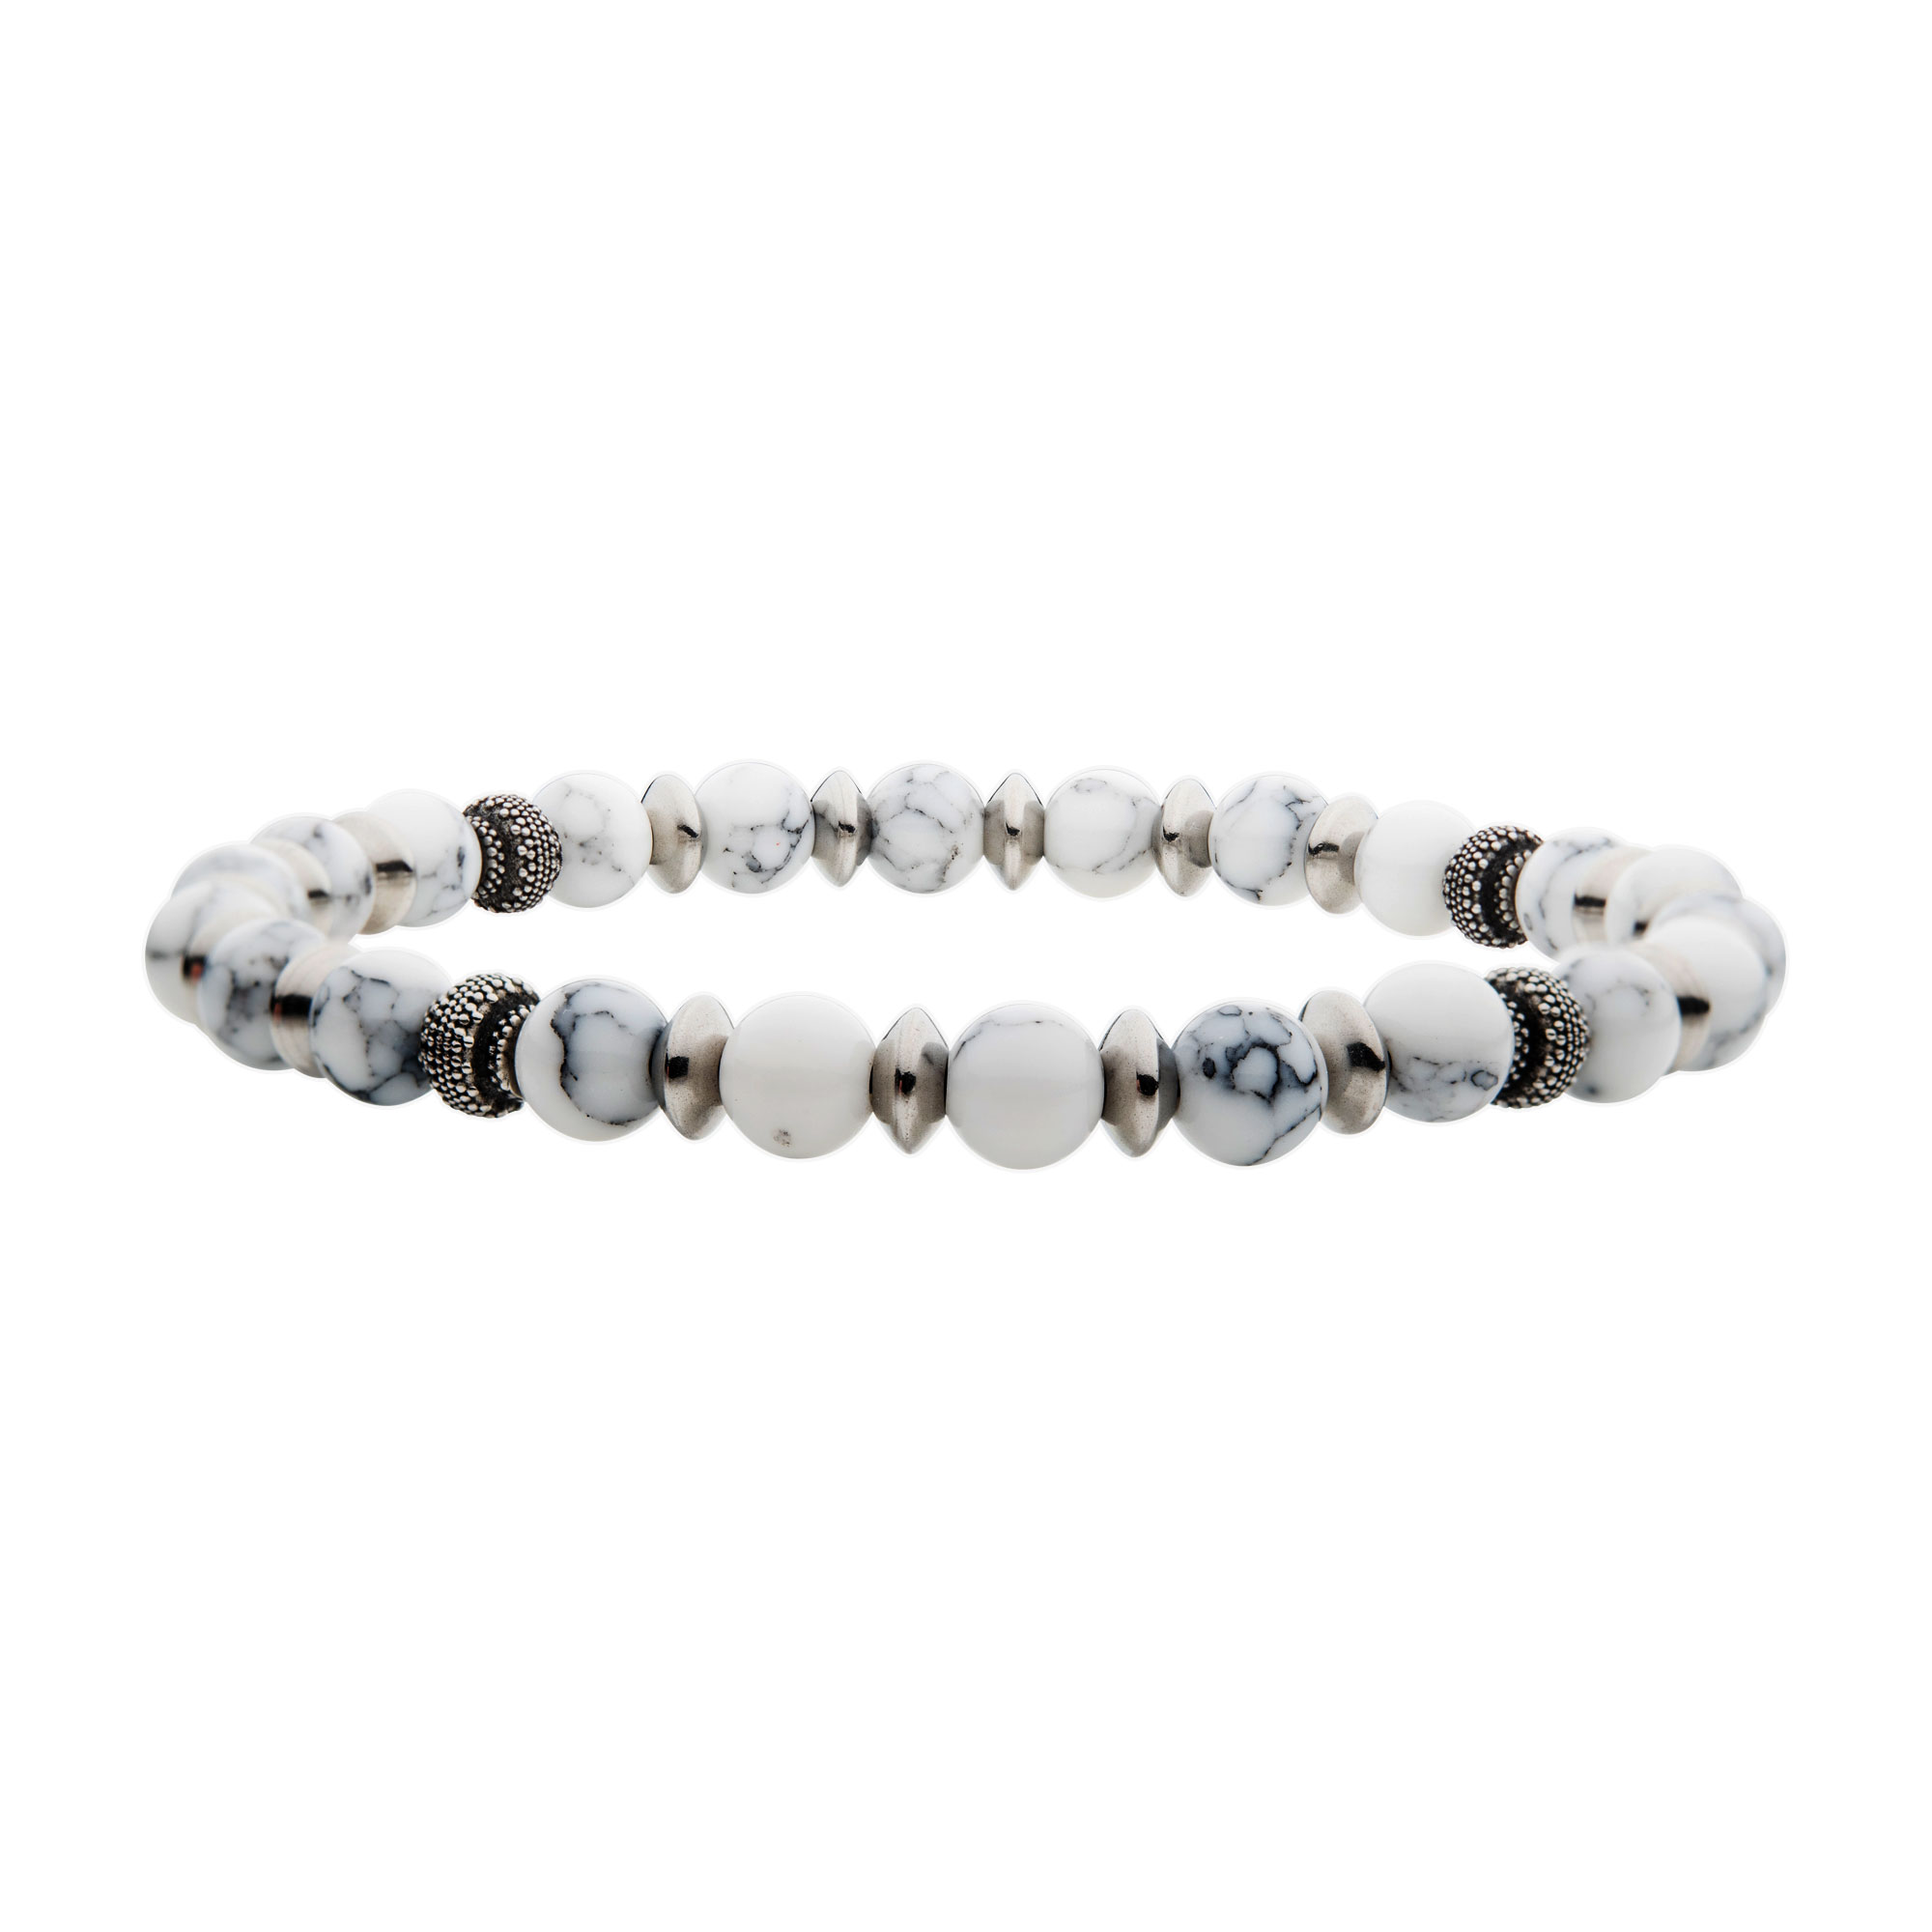 White Howlite Stones with Black Oxidized Beads Bracelet Carroll / Ochs Jewelers Monroe, MI